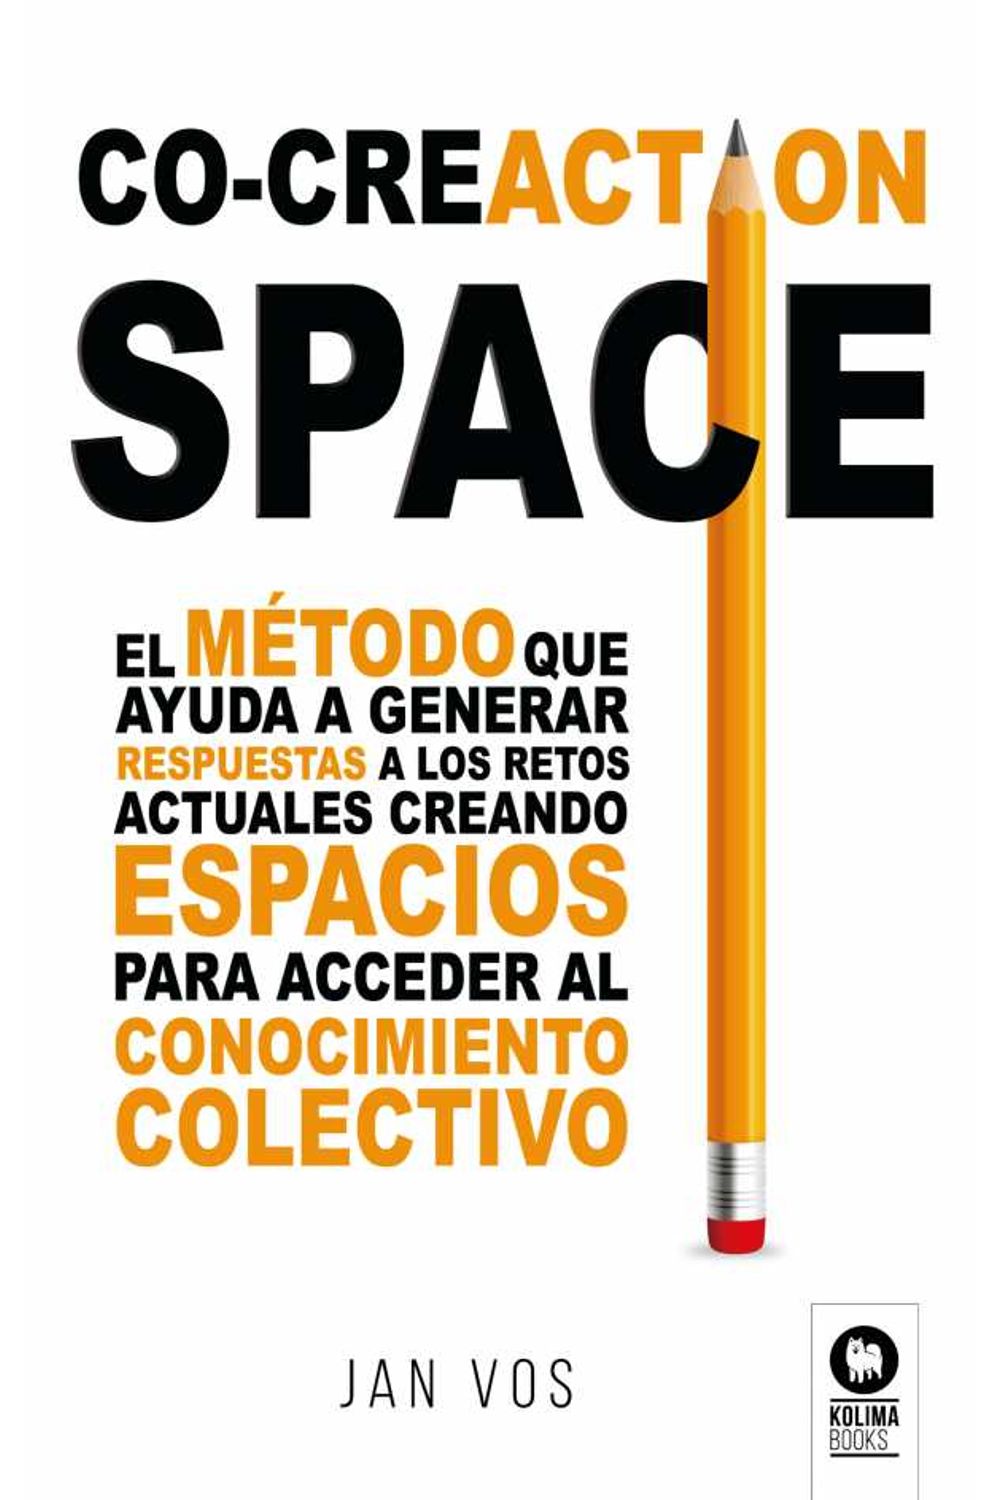 bw-cocreaction-space-kolima-books-9788418811258